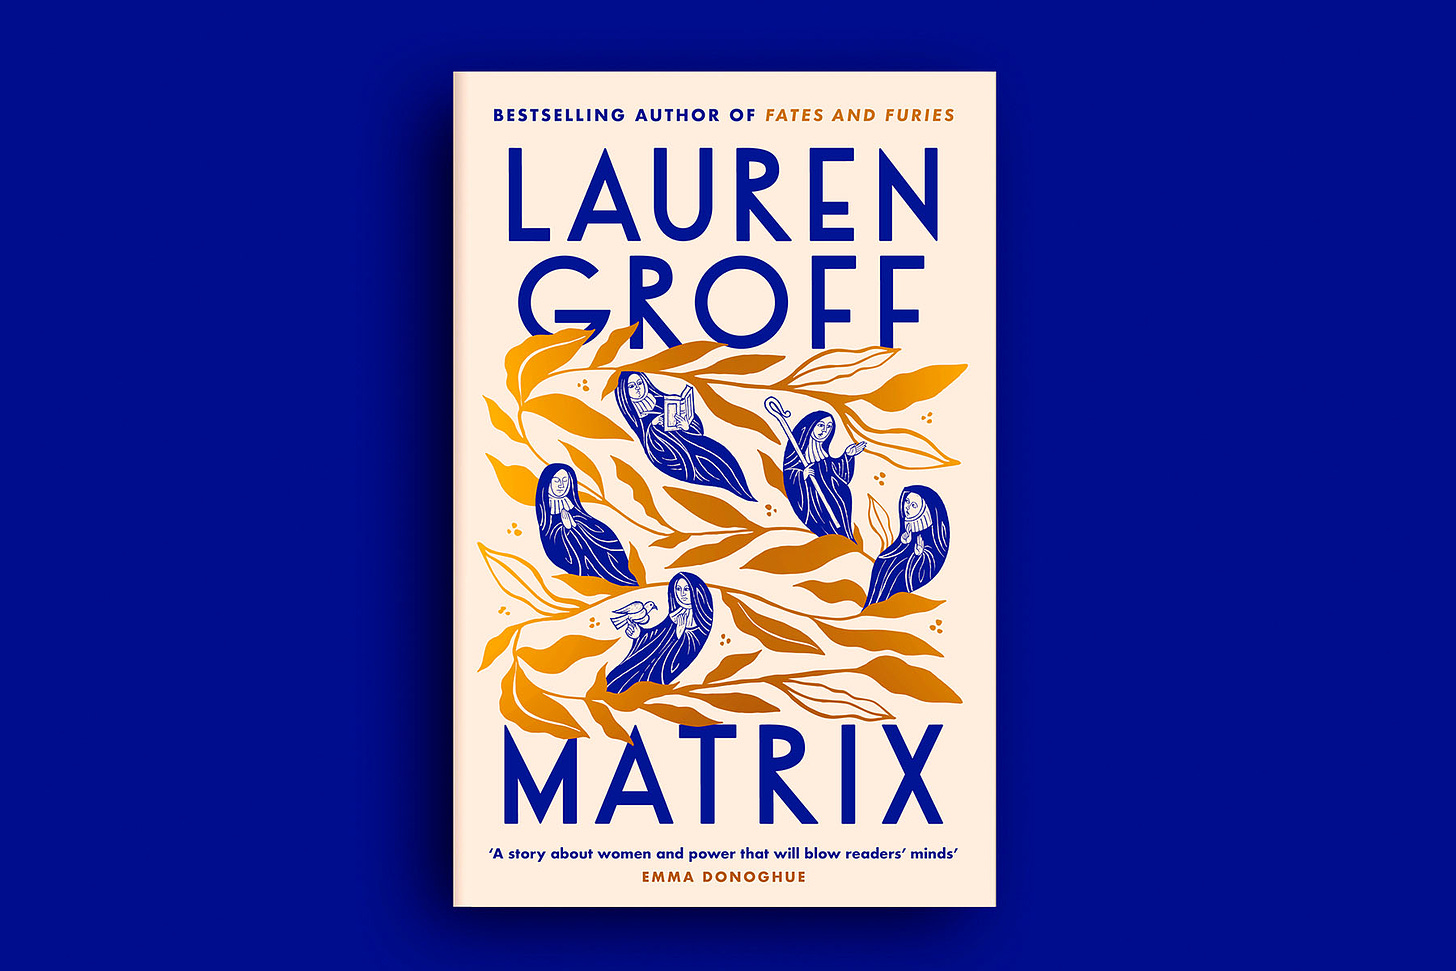 Matrix, by Lauren Groff